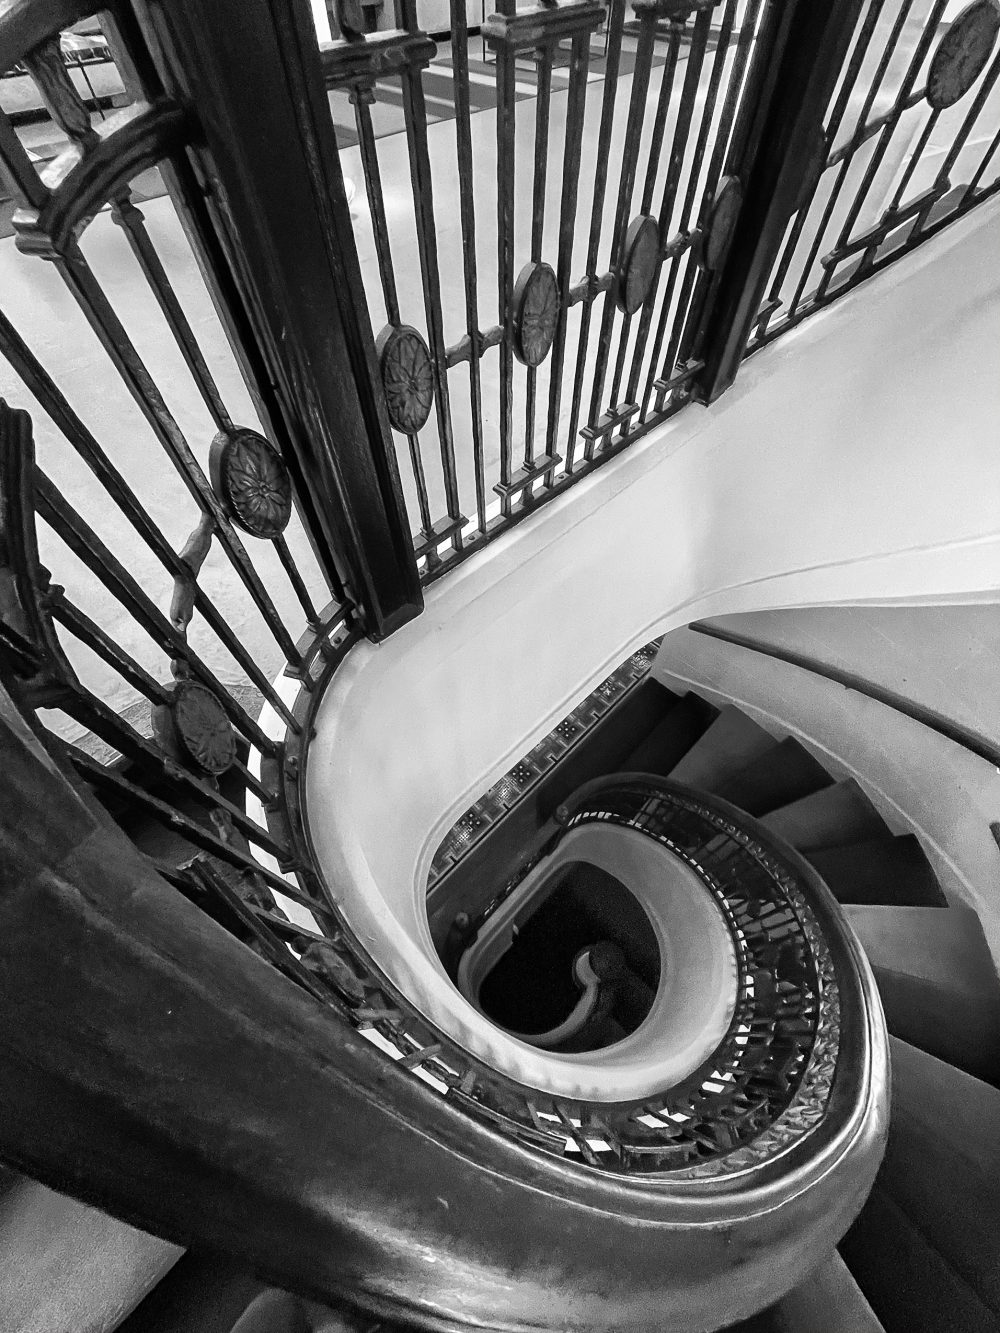 Looking down Stairway, 21c Museum Hotel, Cincinnati #6864